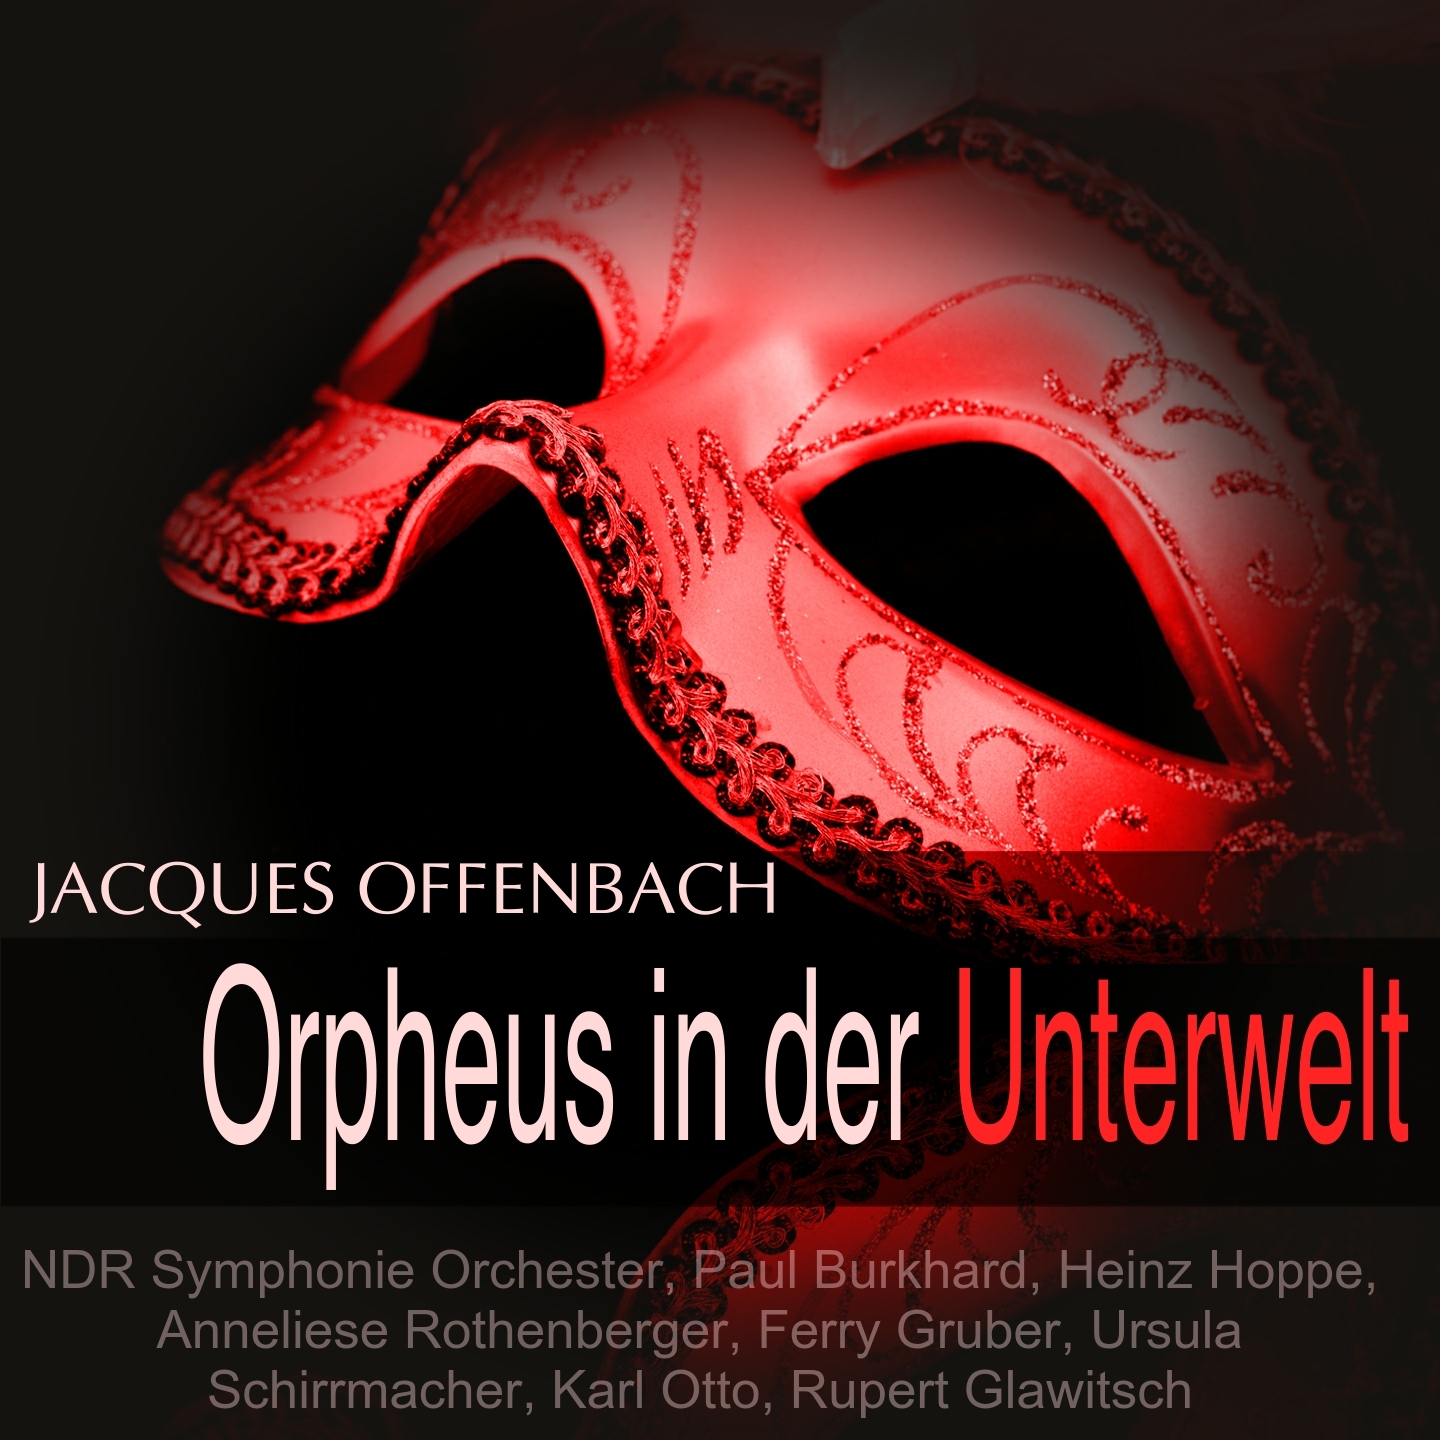 Orpheus in der Unterwelt: Dialog 1 (Eurydike, Orpheus)